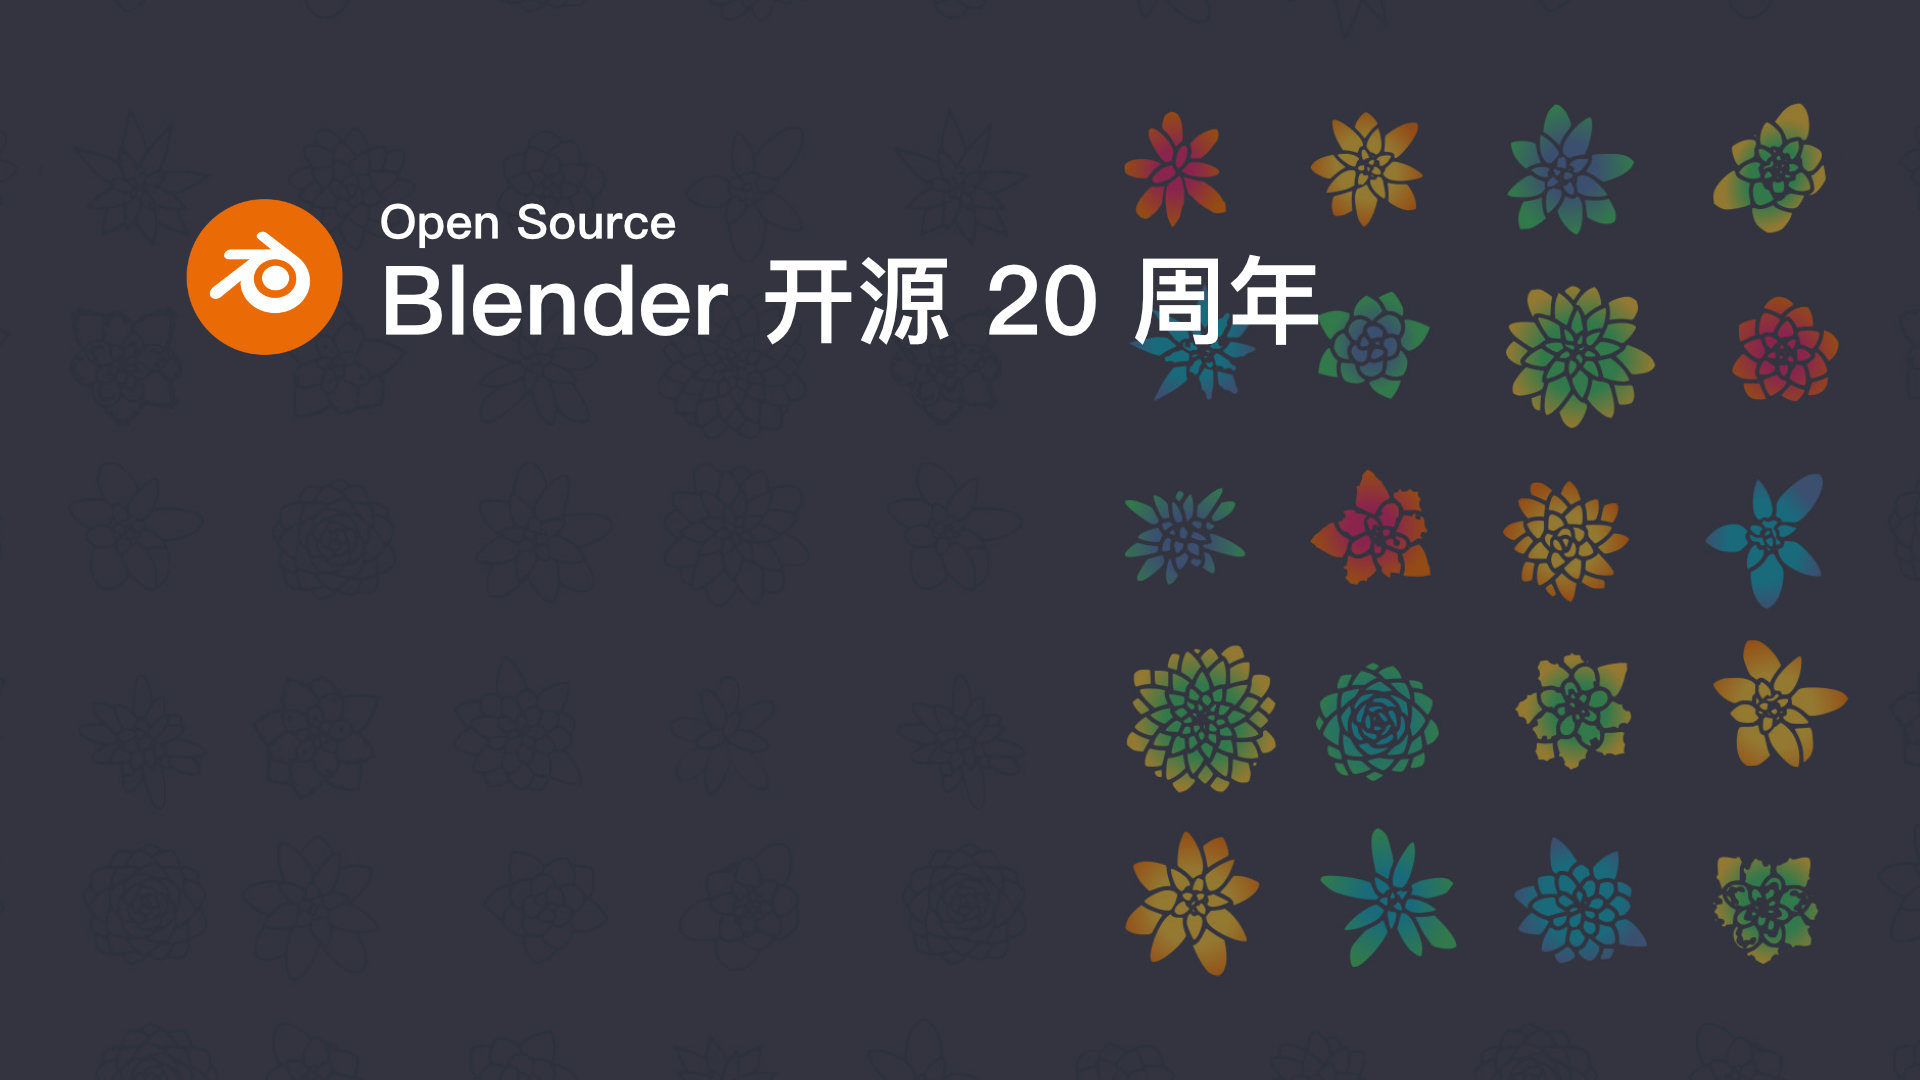 Blender 开源 20 周年.jpg